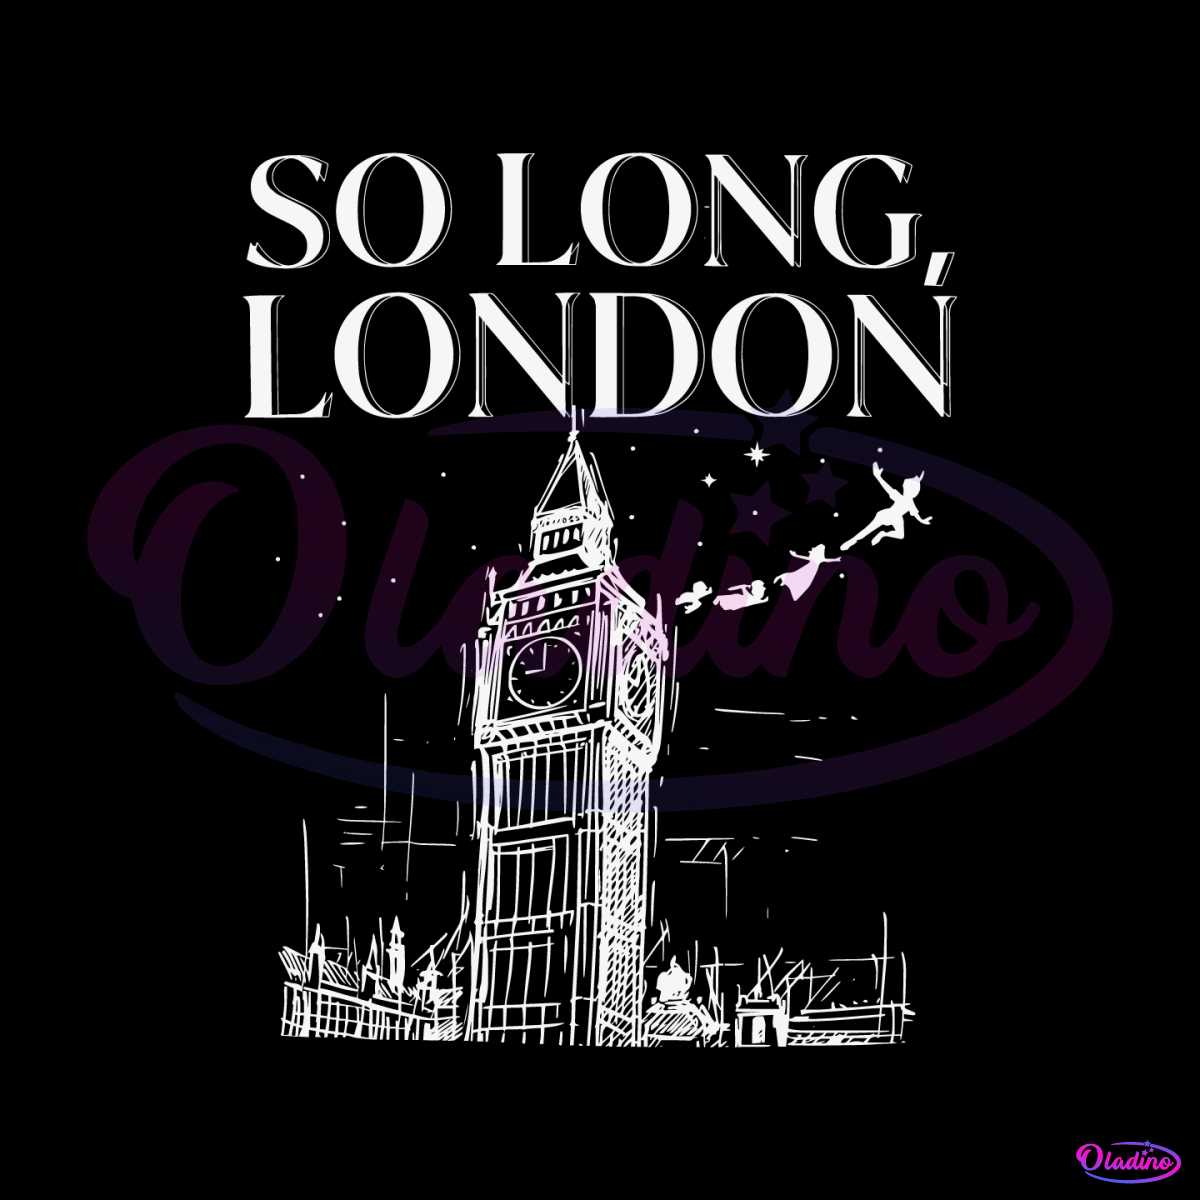 retro-so-long-london-taylor-song-svg